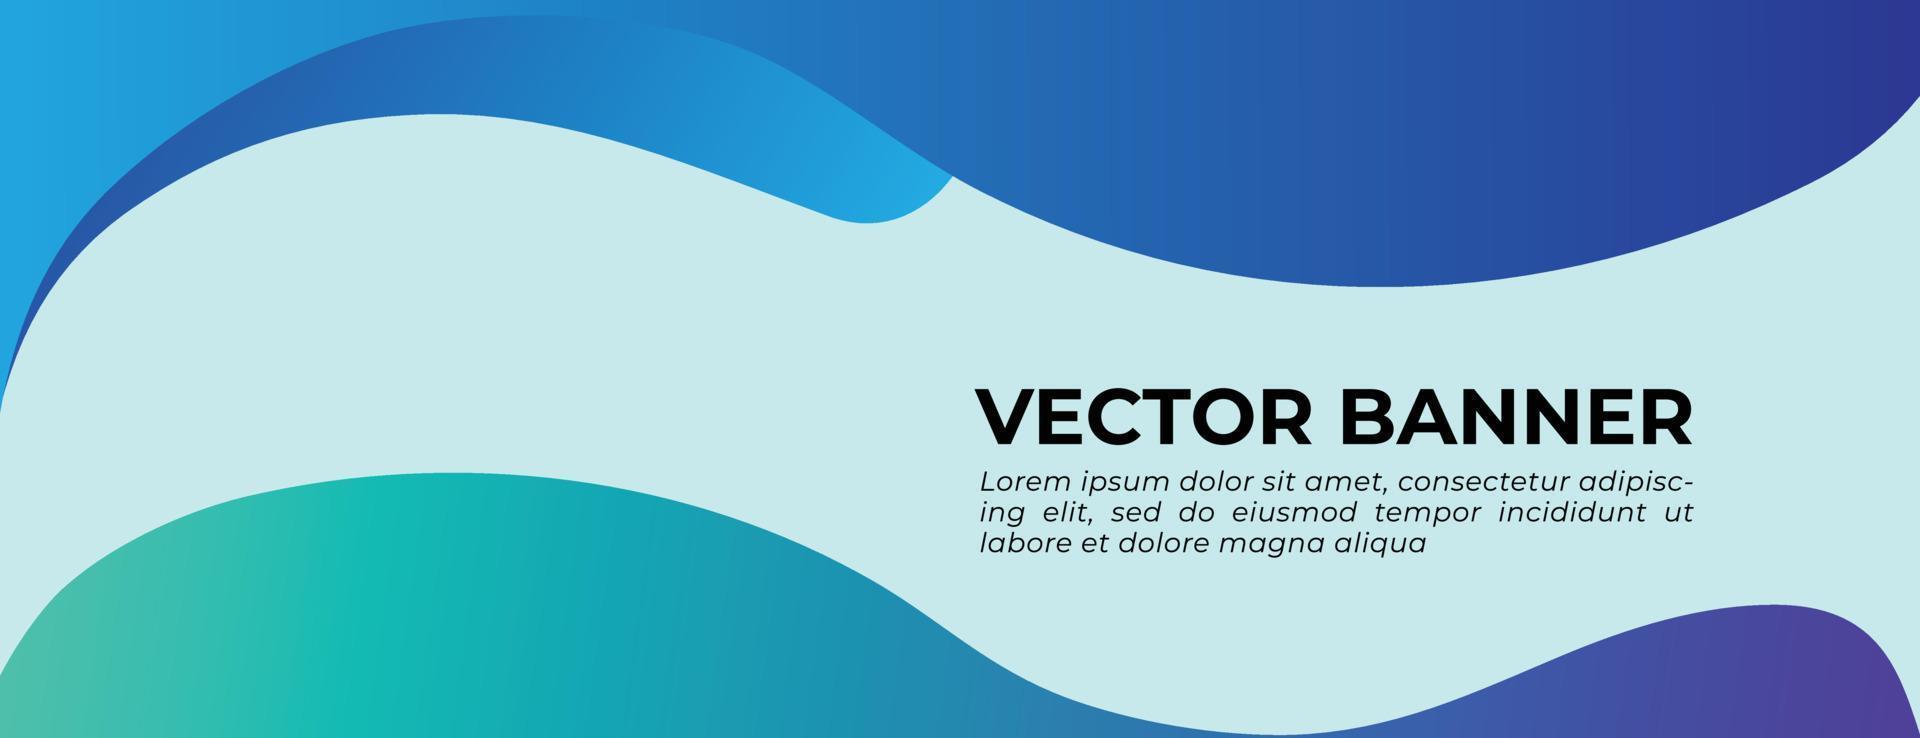 banner de vector de ondas azules con diseño de plantilla de forma de triángulo geométrico